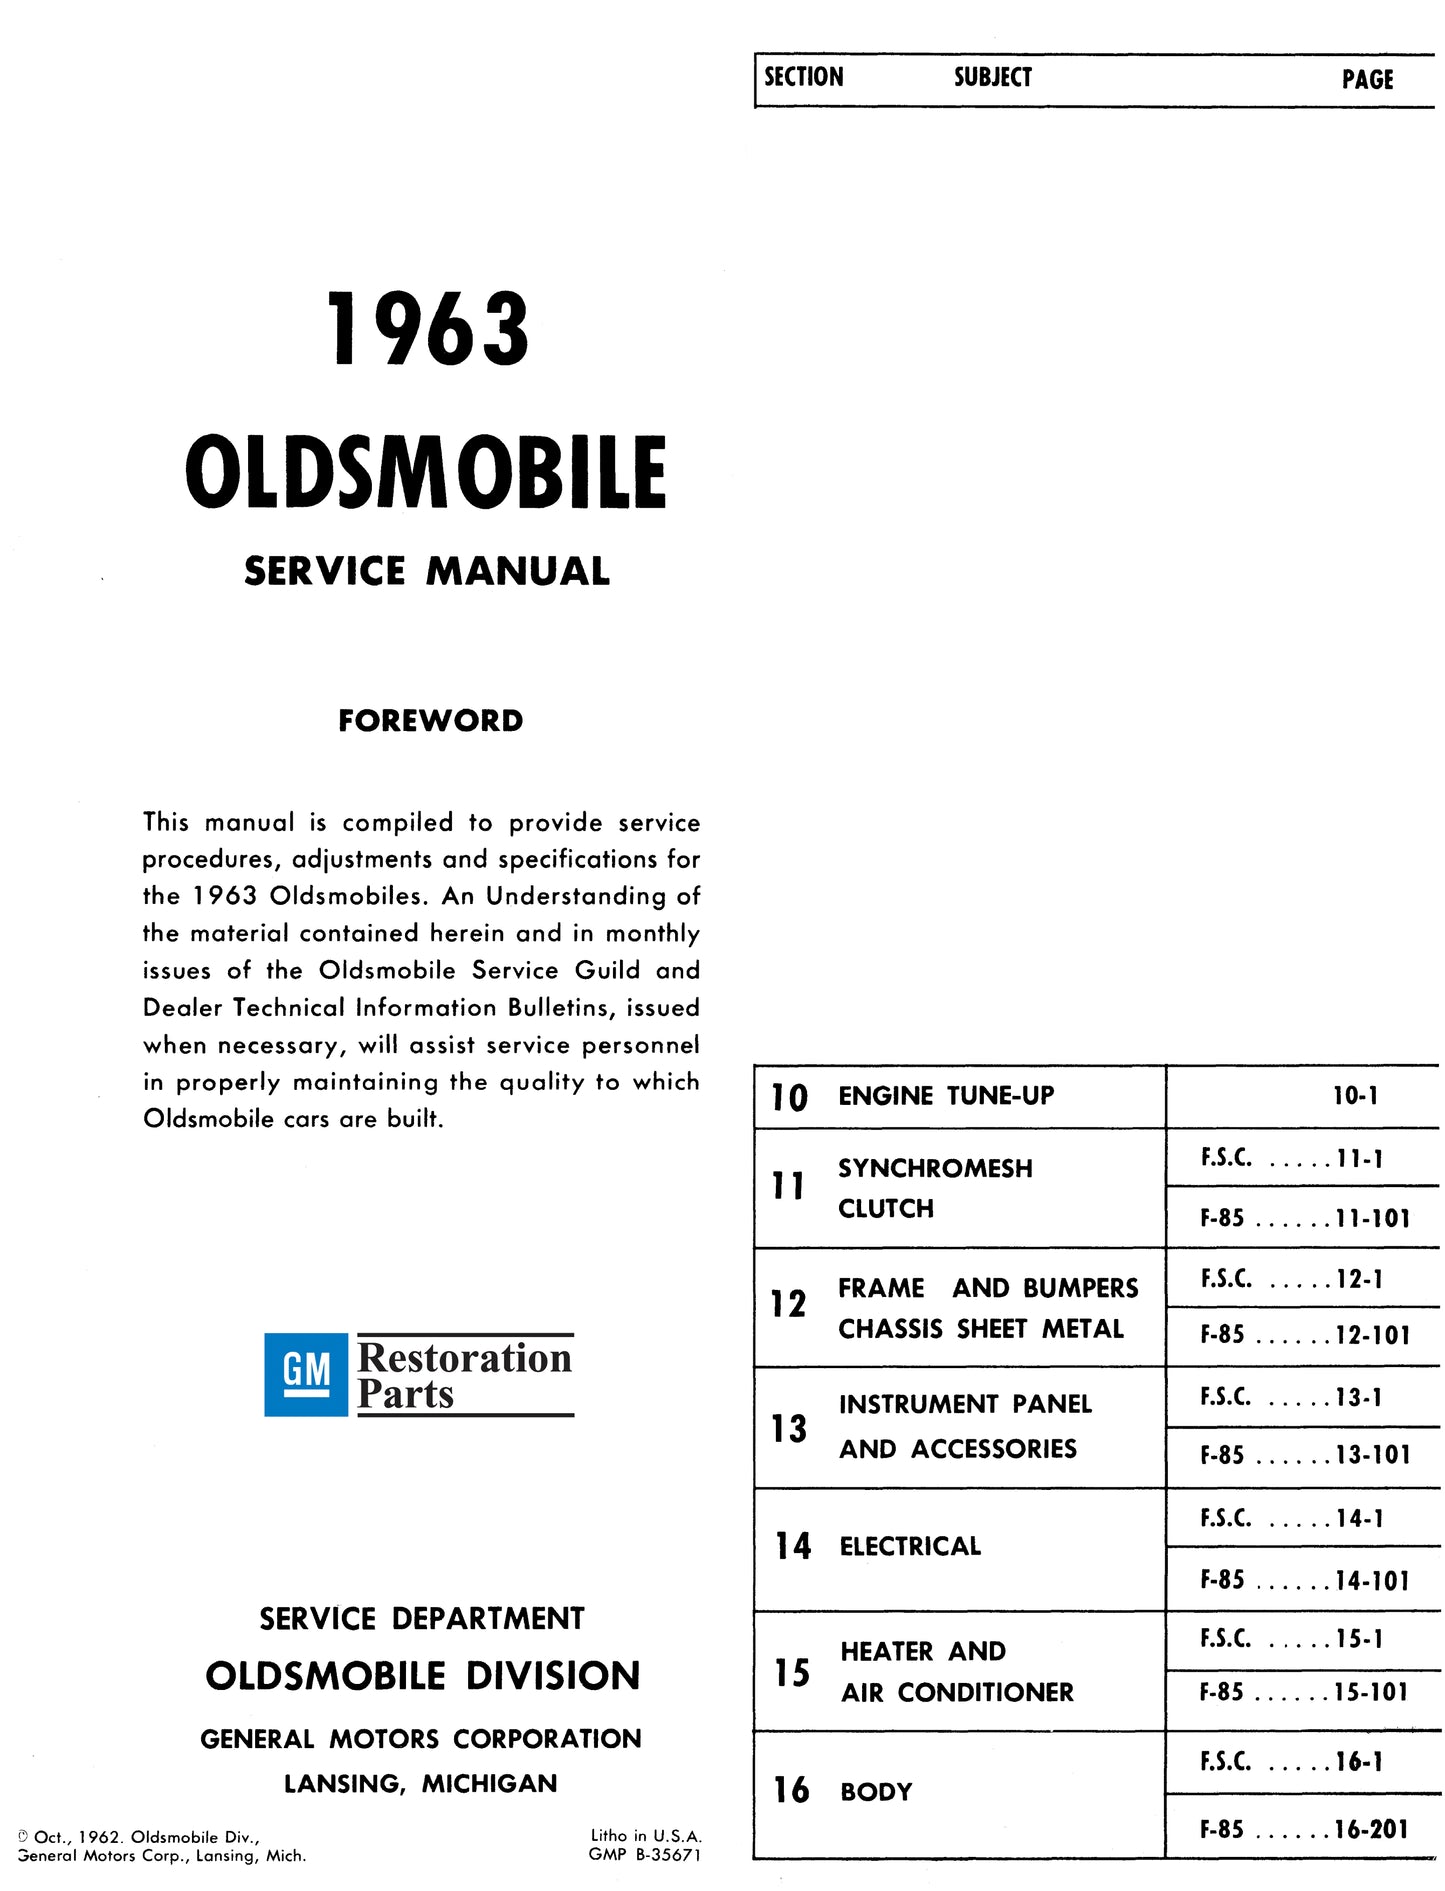 1963 Oldsmobile Shop Manual - All Models